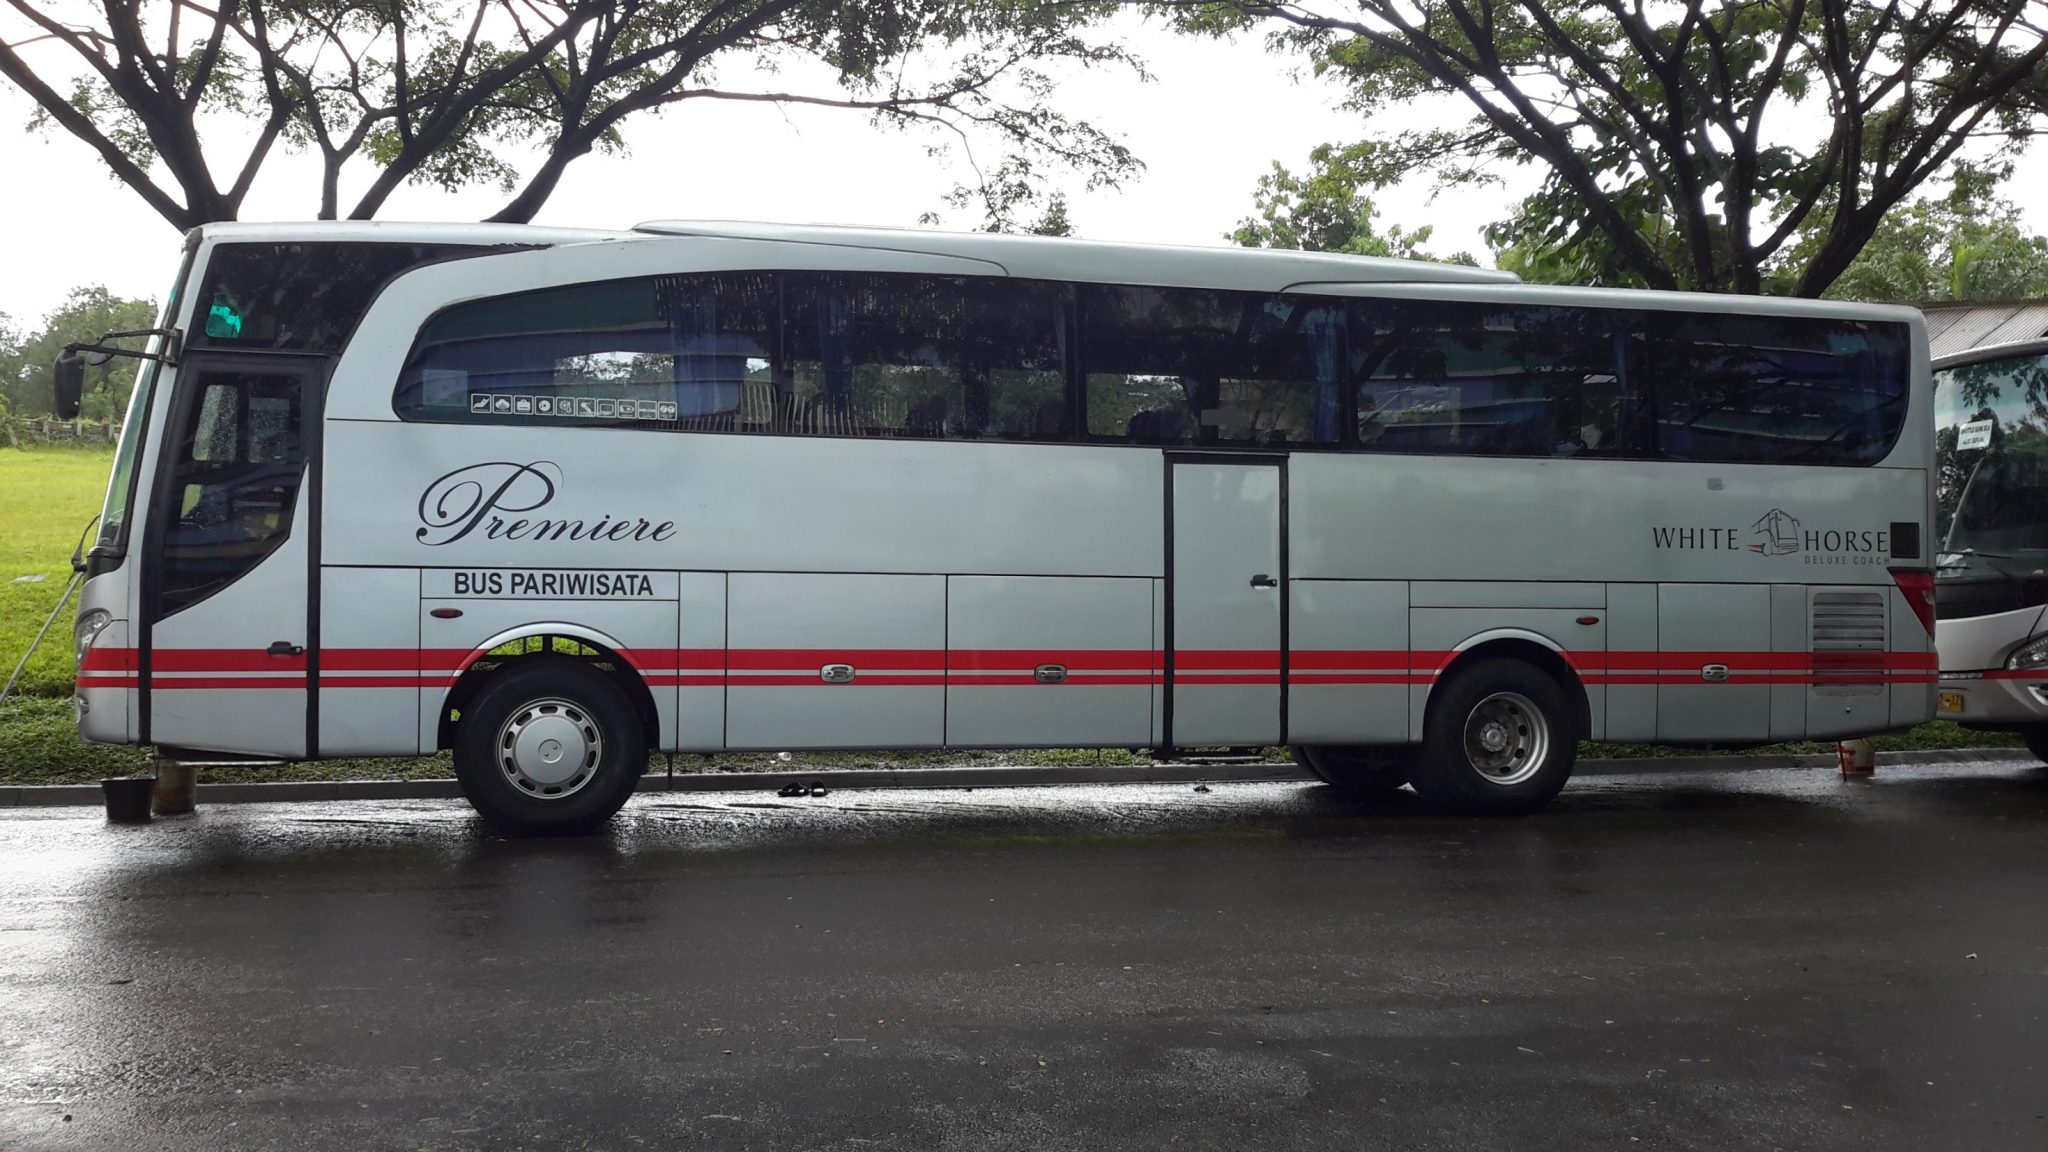 White Horse - Mengenal Tipe dan Jenis Bus Pariwisata dari Berbagai Otobus di Indonesia